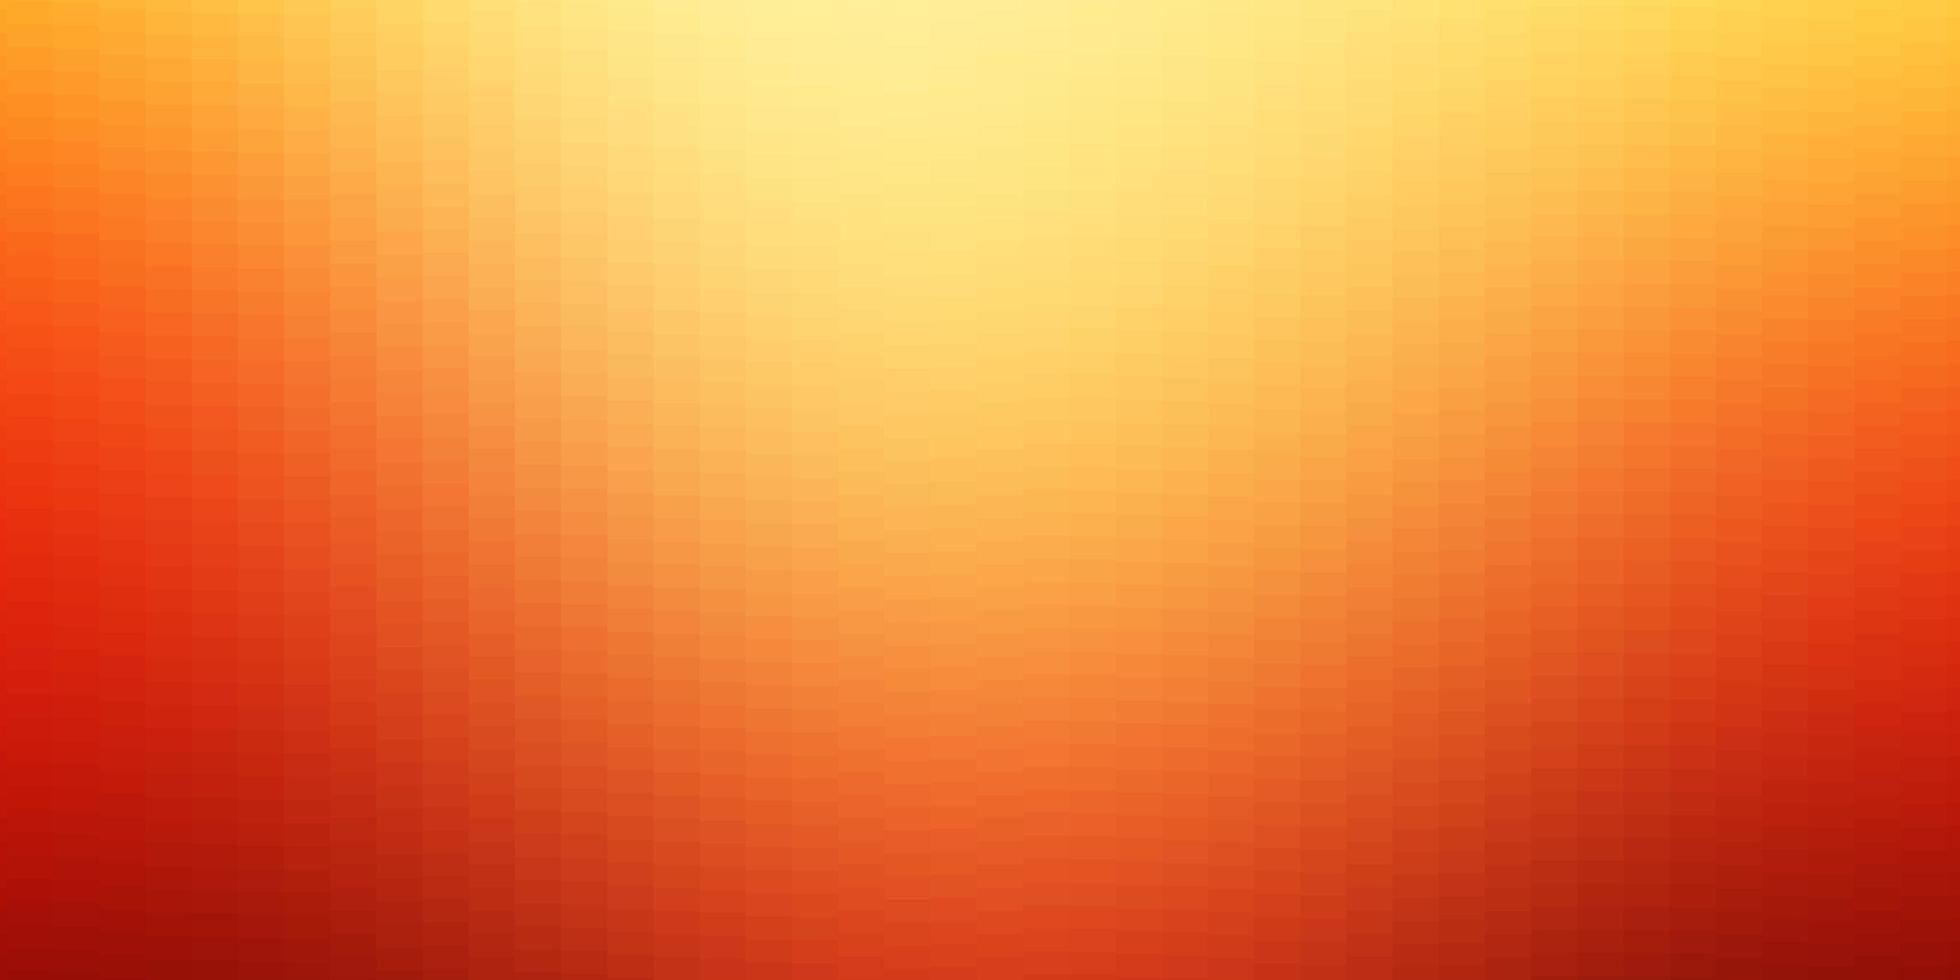 luz vermelha, amarelo padrão de vetor em estilo quadrado.